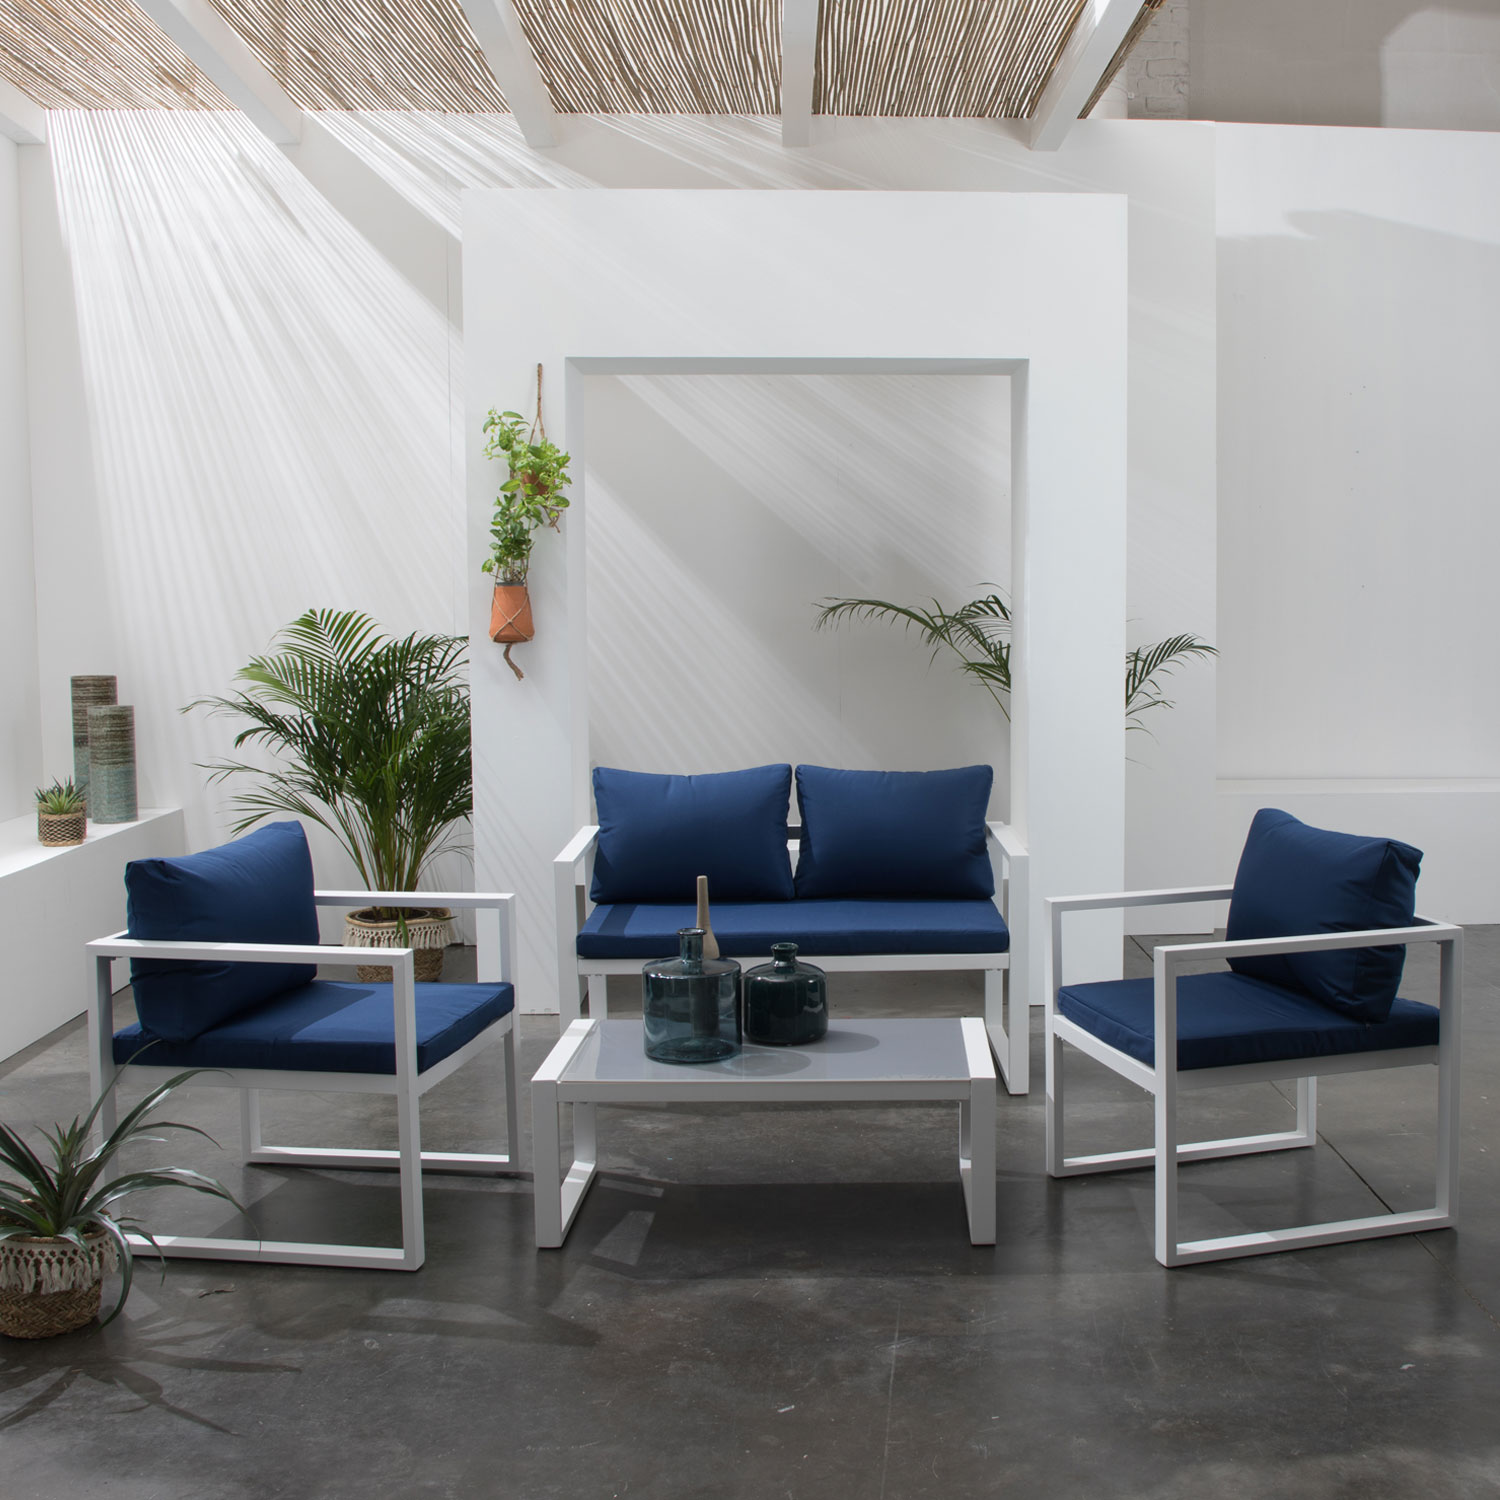 Set di mobili da giardino IBIZA in tessuto blu 4 posti - alluminio bianco